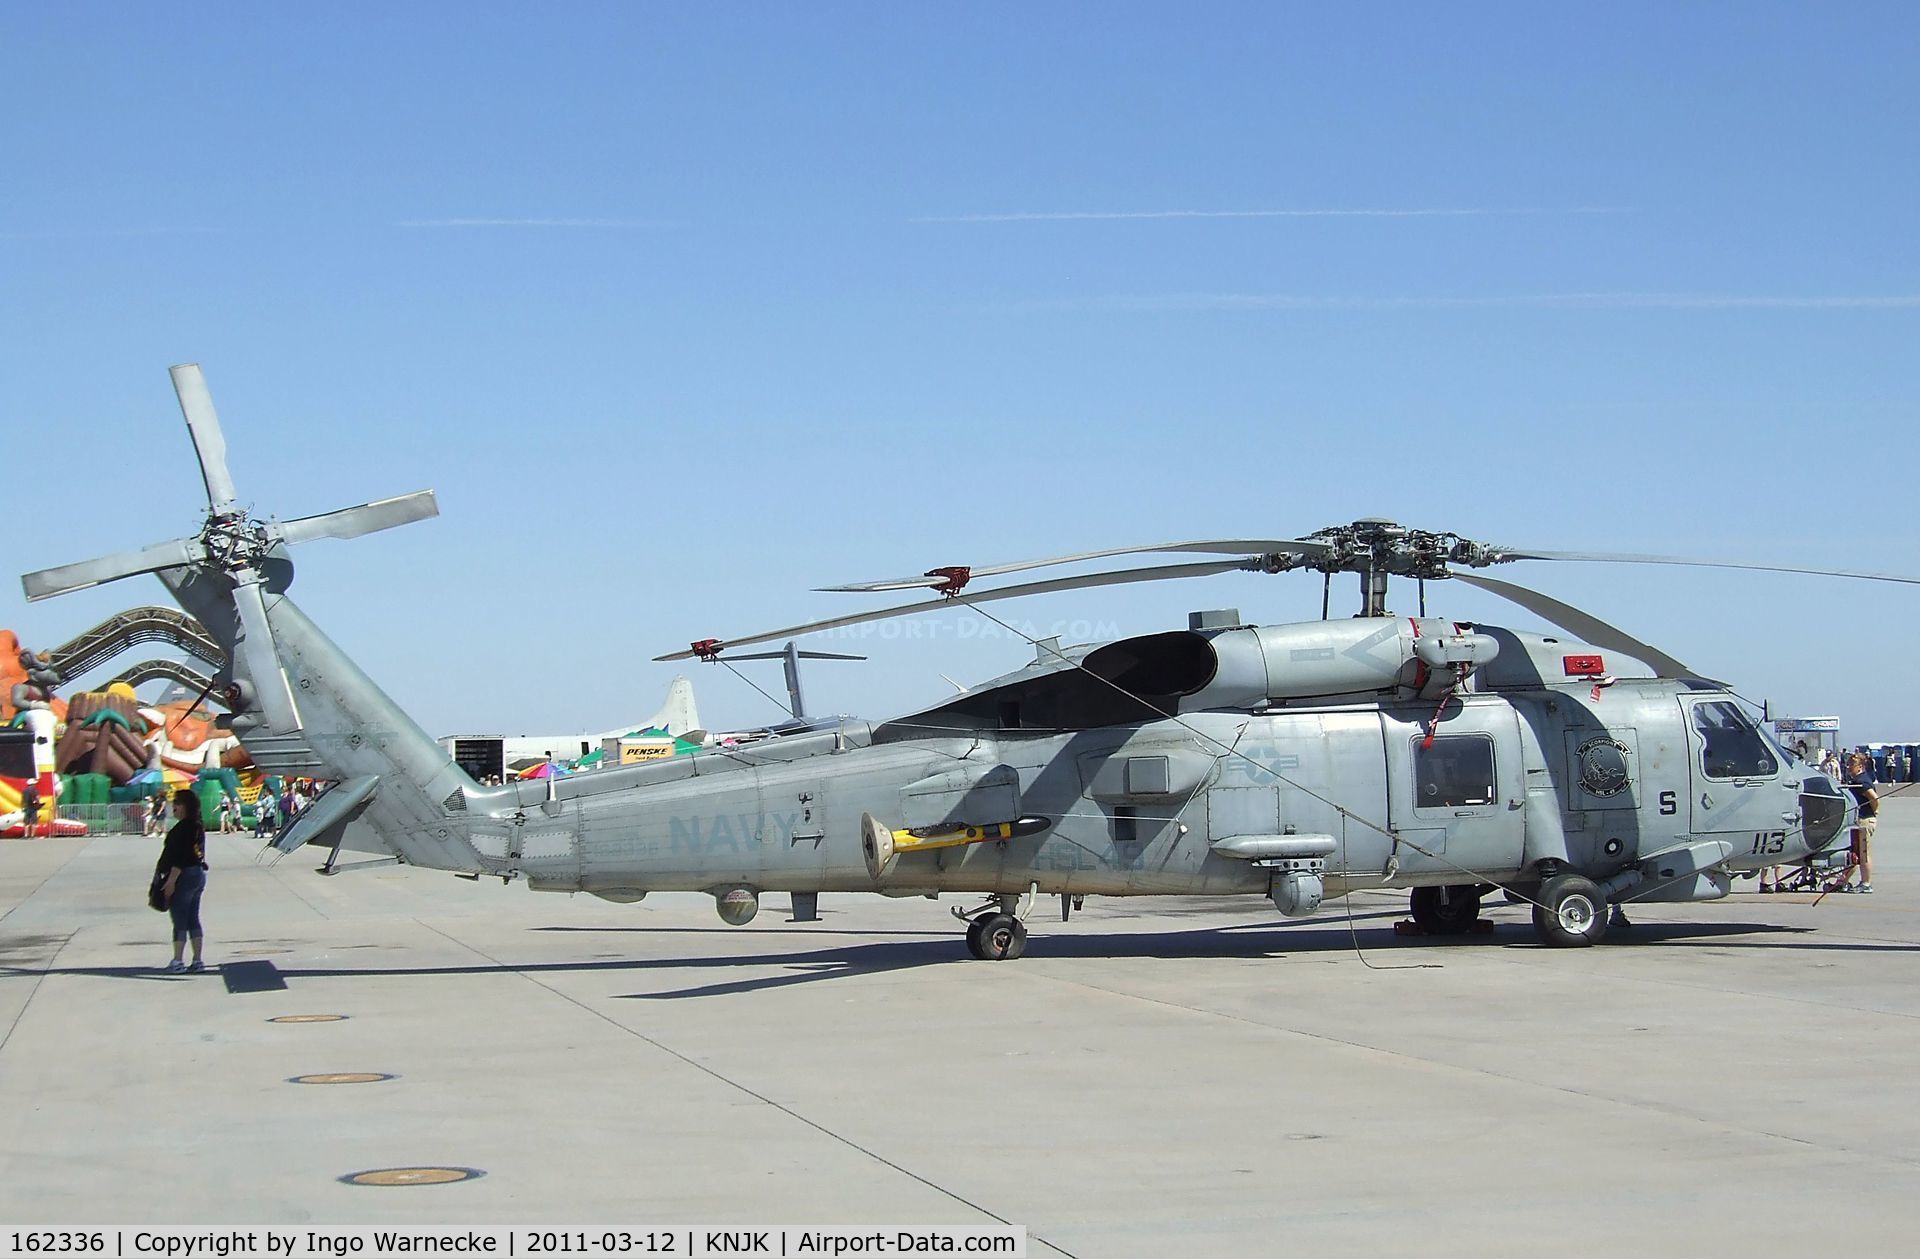 162336, Sikorsky SH-60B Seahawk C/N 70-0442, Sikorsky SH-60B Seahawk of the US Navy at the 2011 airshow at El Centro NAS, CA